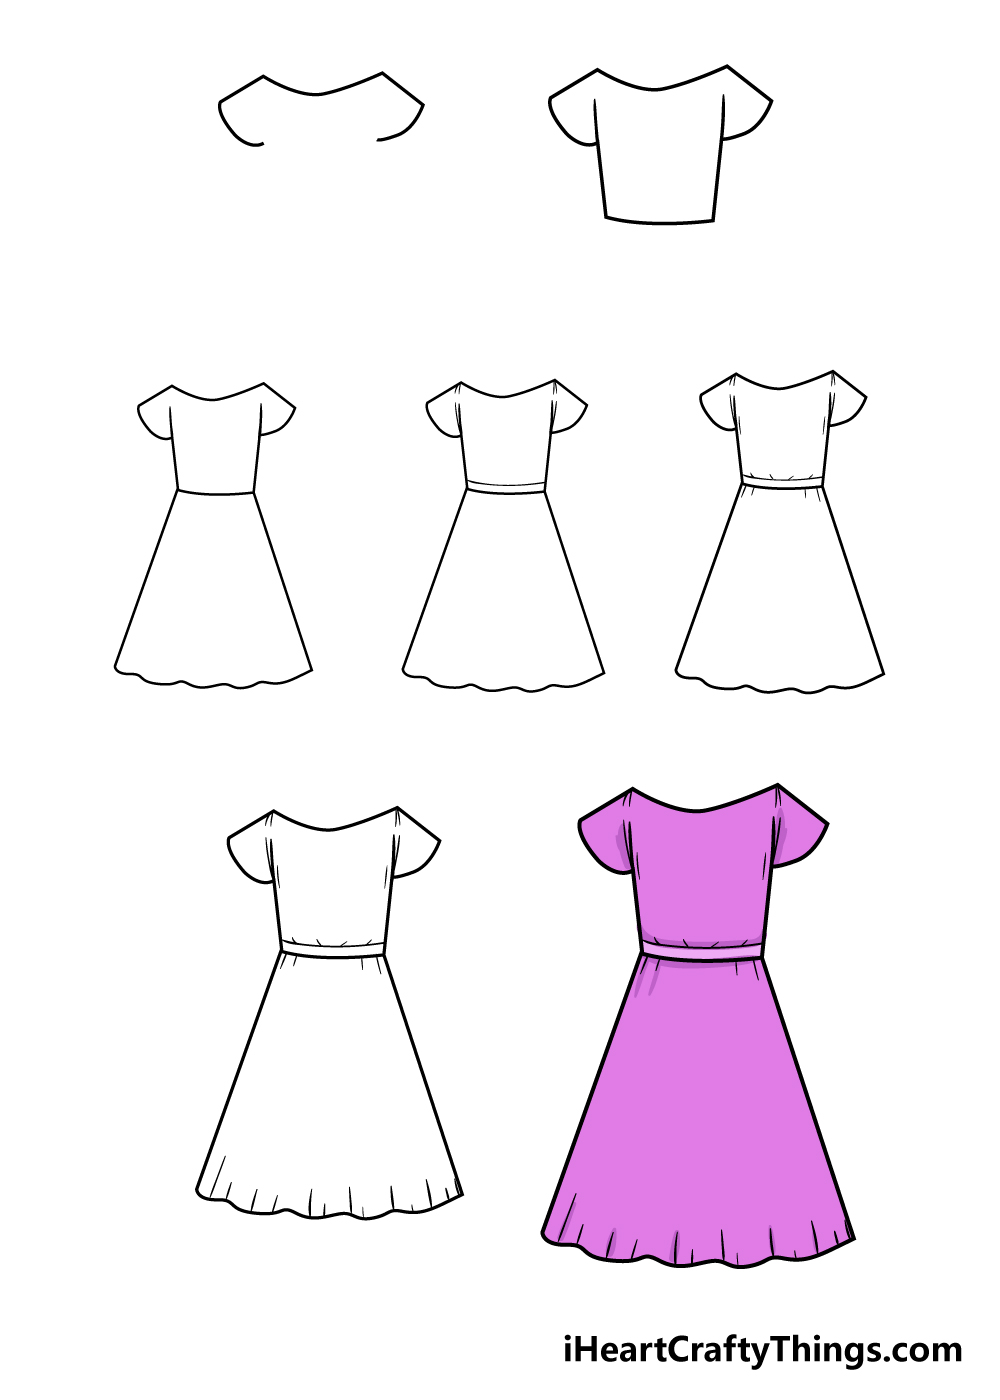 dress in 7 steps - Hướng dẫn cách vẽ váy đơn giản với 7 bước cơ bản